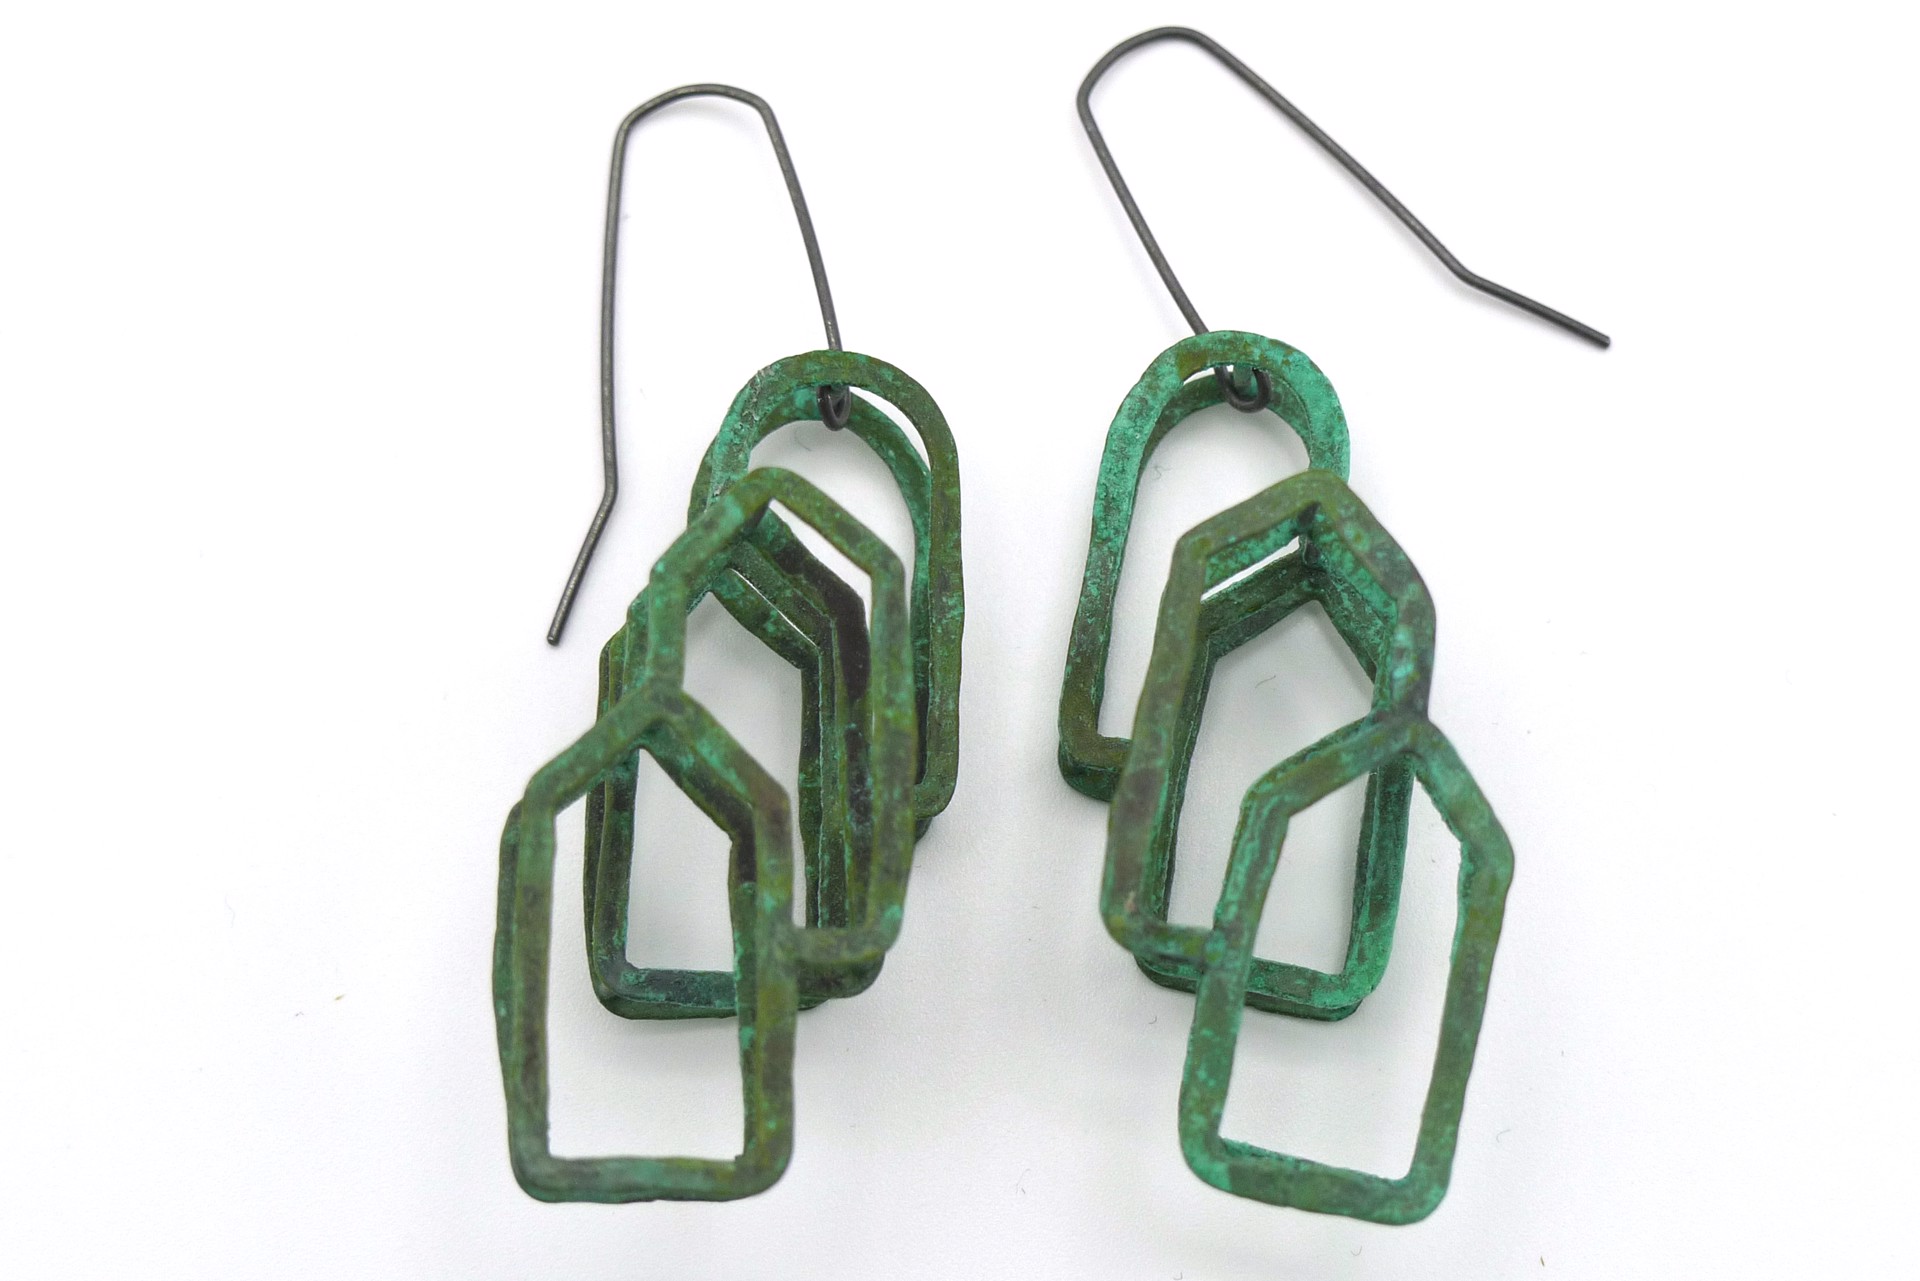 Triple Arch House Grid Earrings by Juan Fried